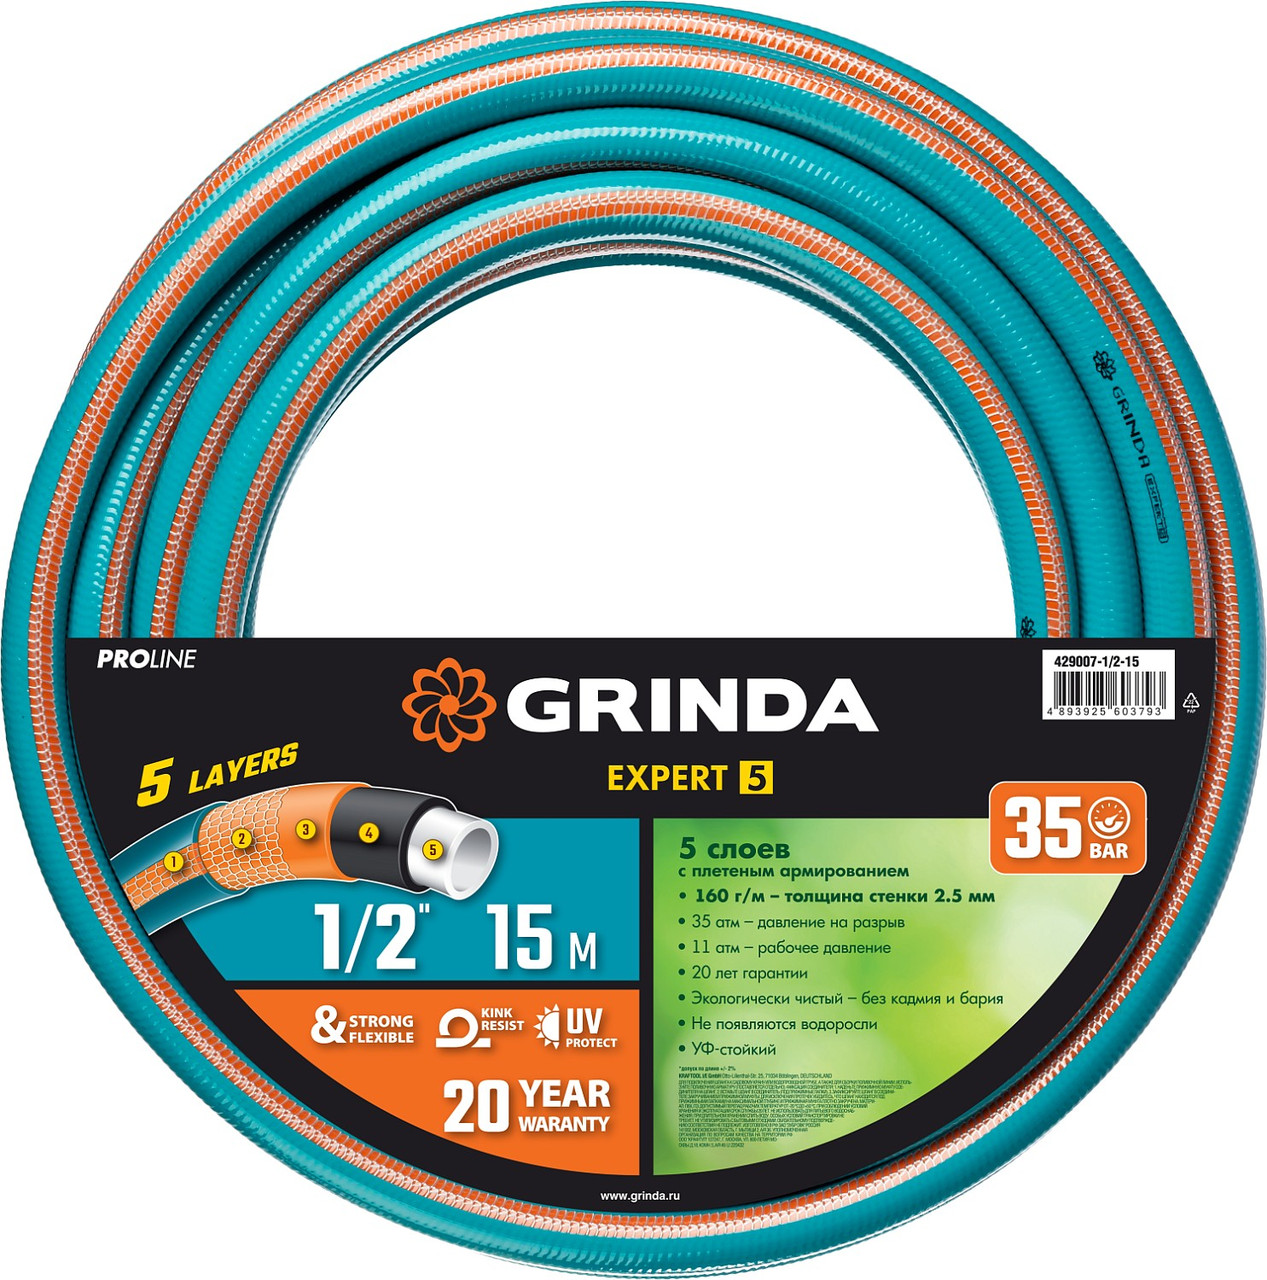 GRINDA EXPERT 5 1/2″, 15 м, 35 атм, пятислойный, плетёное армирование, Поливочный шланг, PROLine